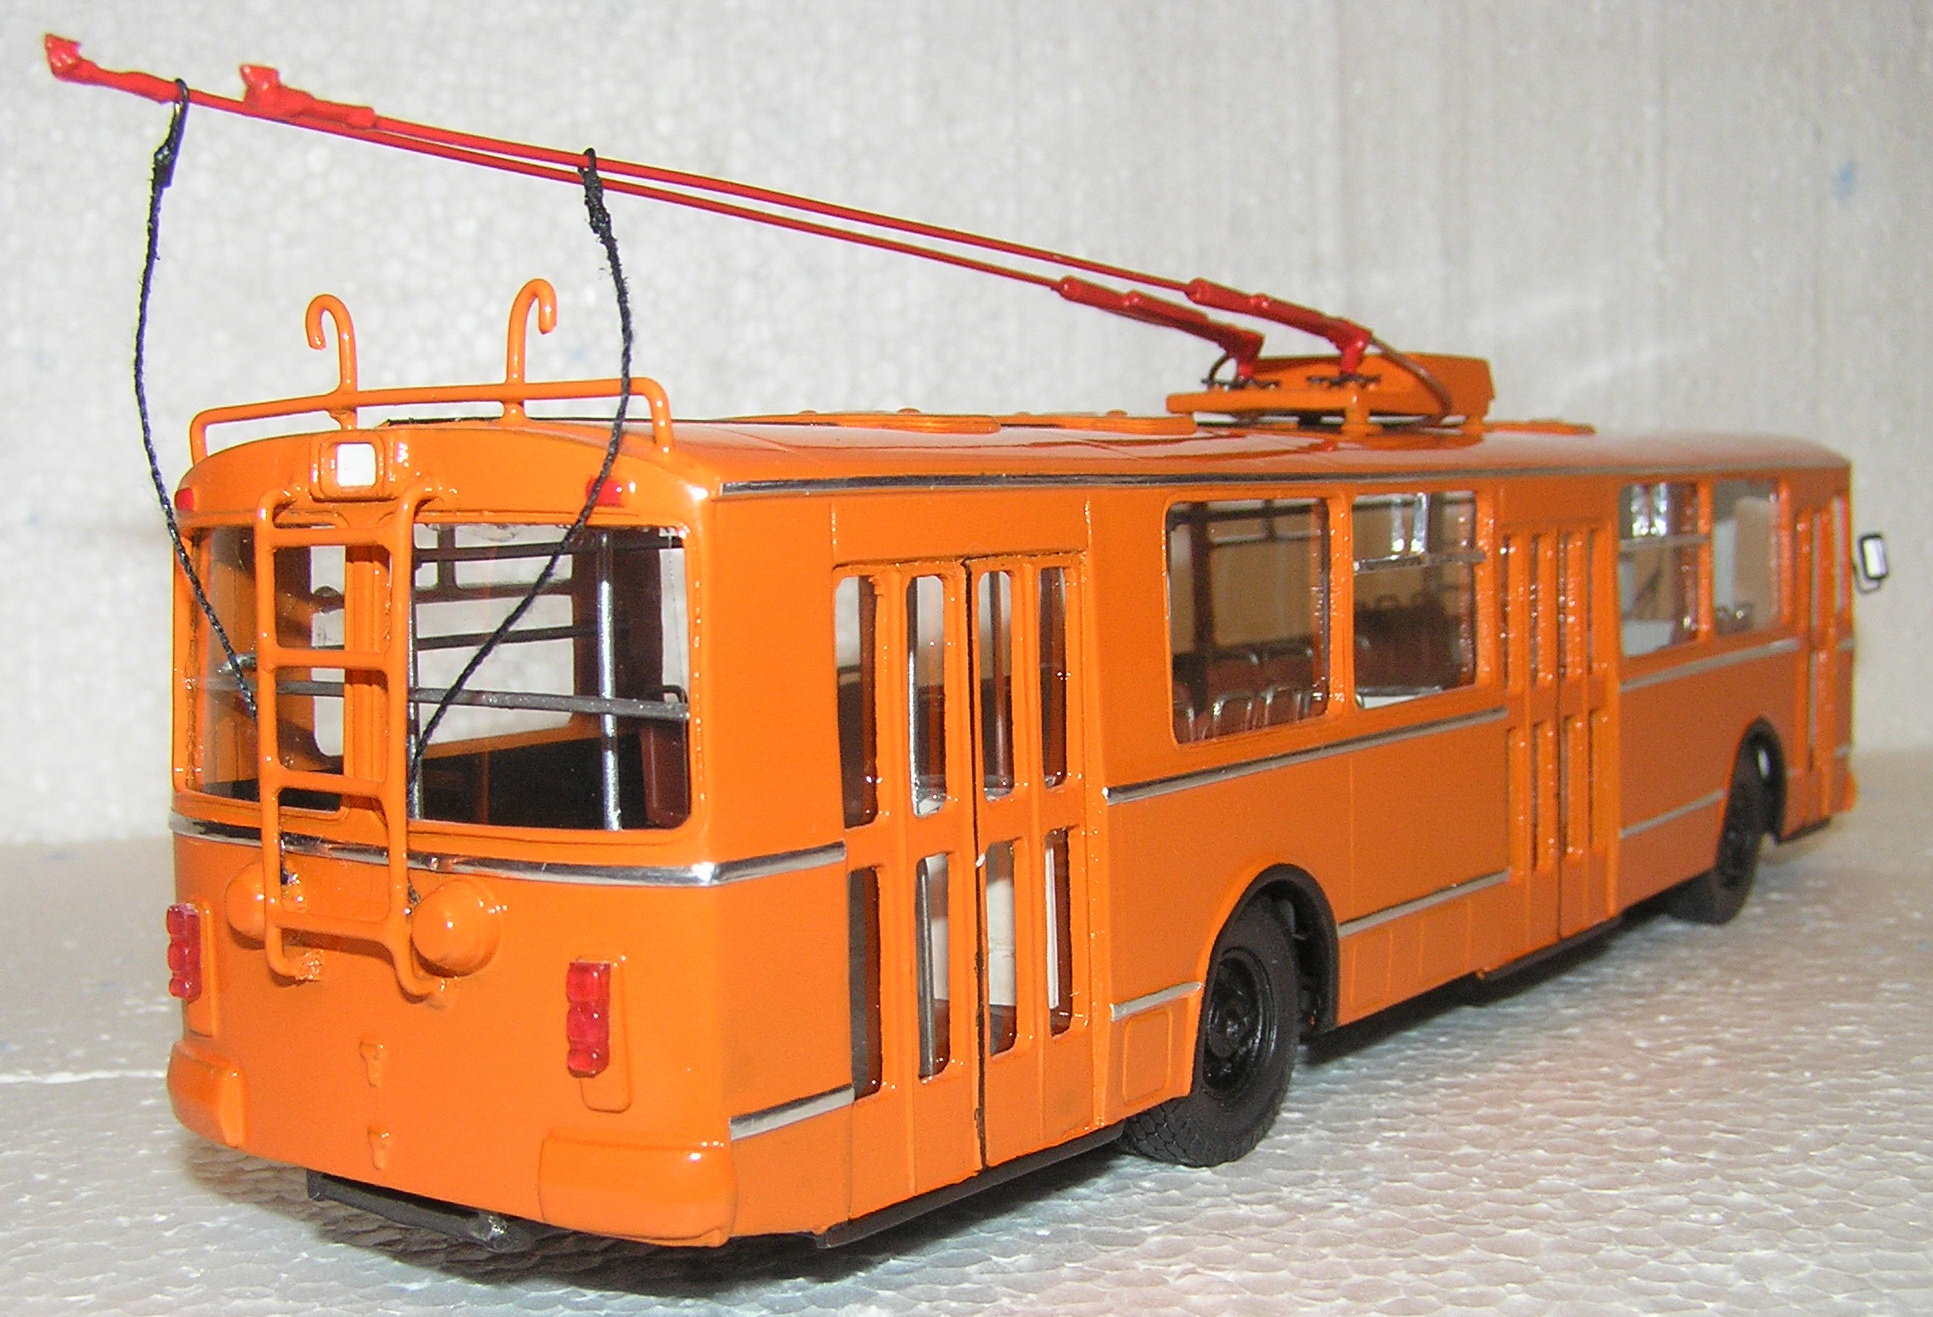 Коллекция троллейбусов зиу. ЗИУ 682 1 43. ЗИУ 682 модель 1 43. ЗИУ 5 троллейбус модель 1/43. Троллейбус ЗИУ 682 модель 1 43.